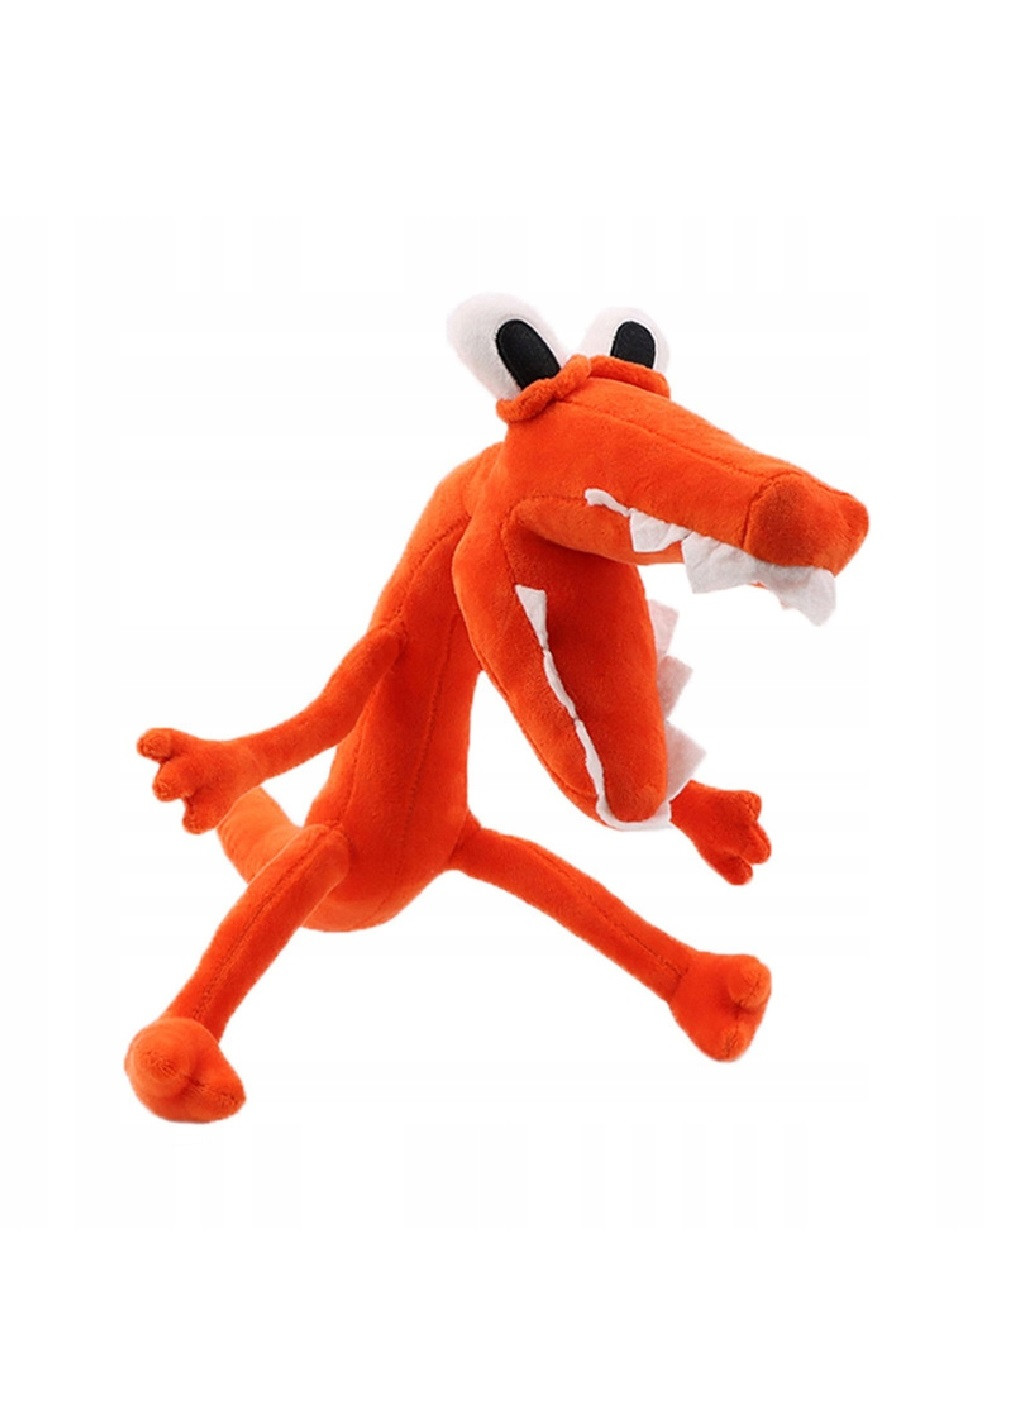 Оригінальна дитяча м'яка плюшева іграшка для дітей персонаж райдужні друзі роболокс 37 см (475400-Prob) Крокодил Оранж Unbranded (266987848)